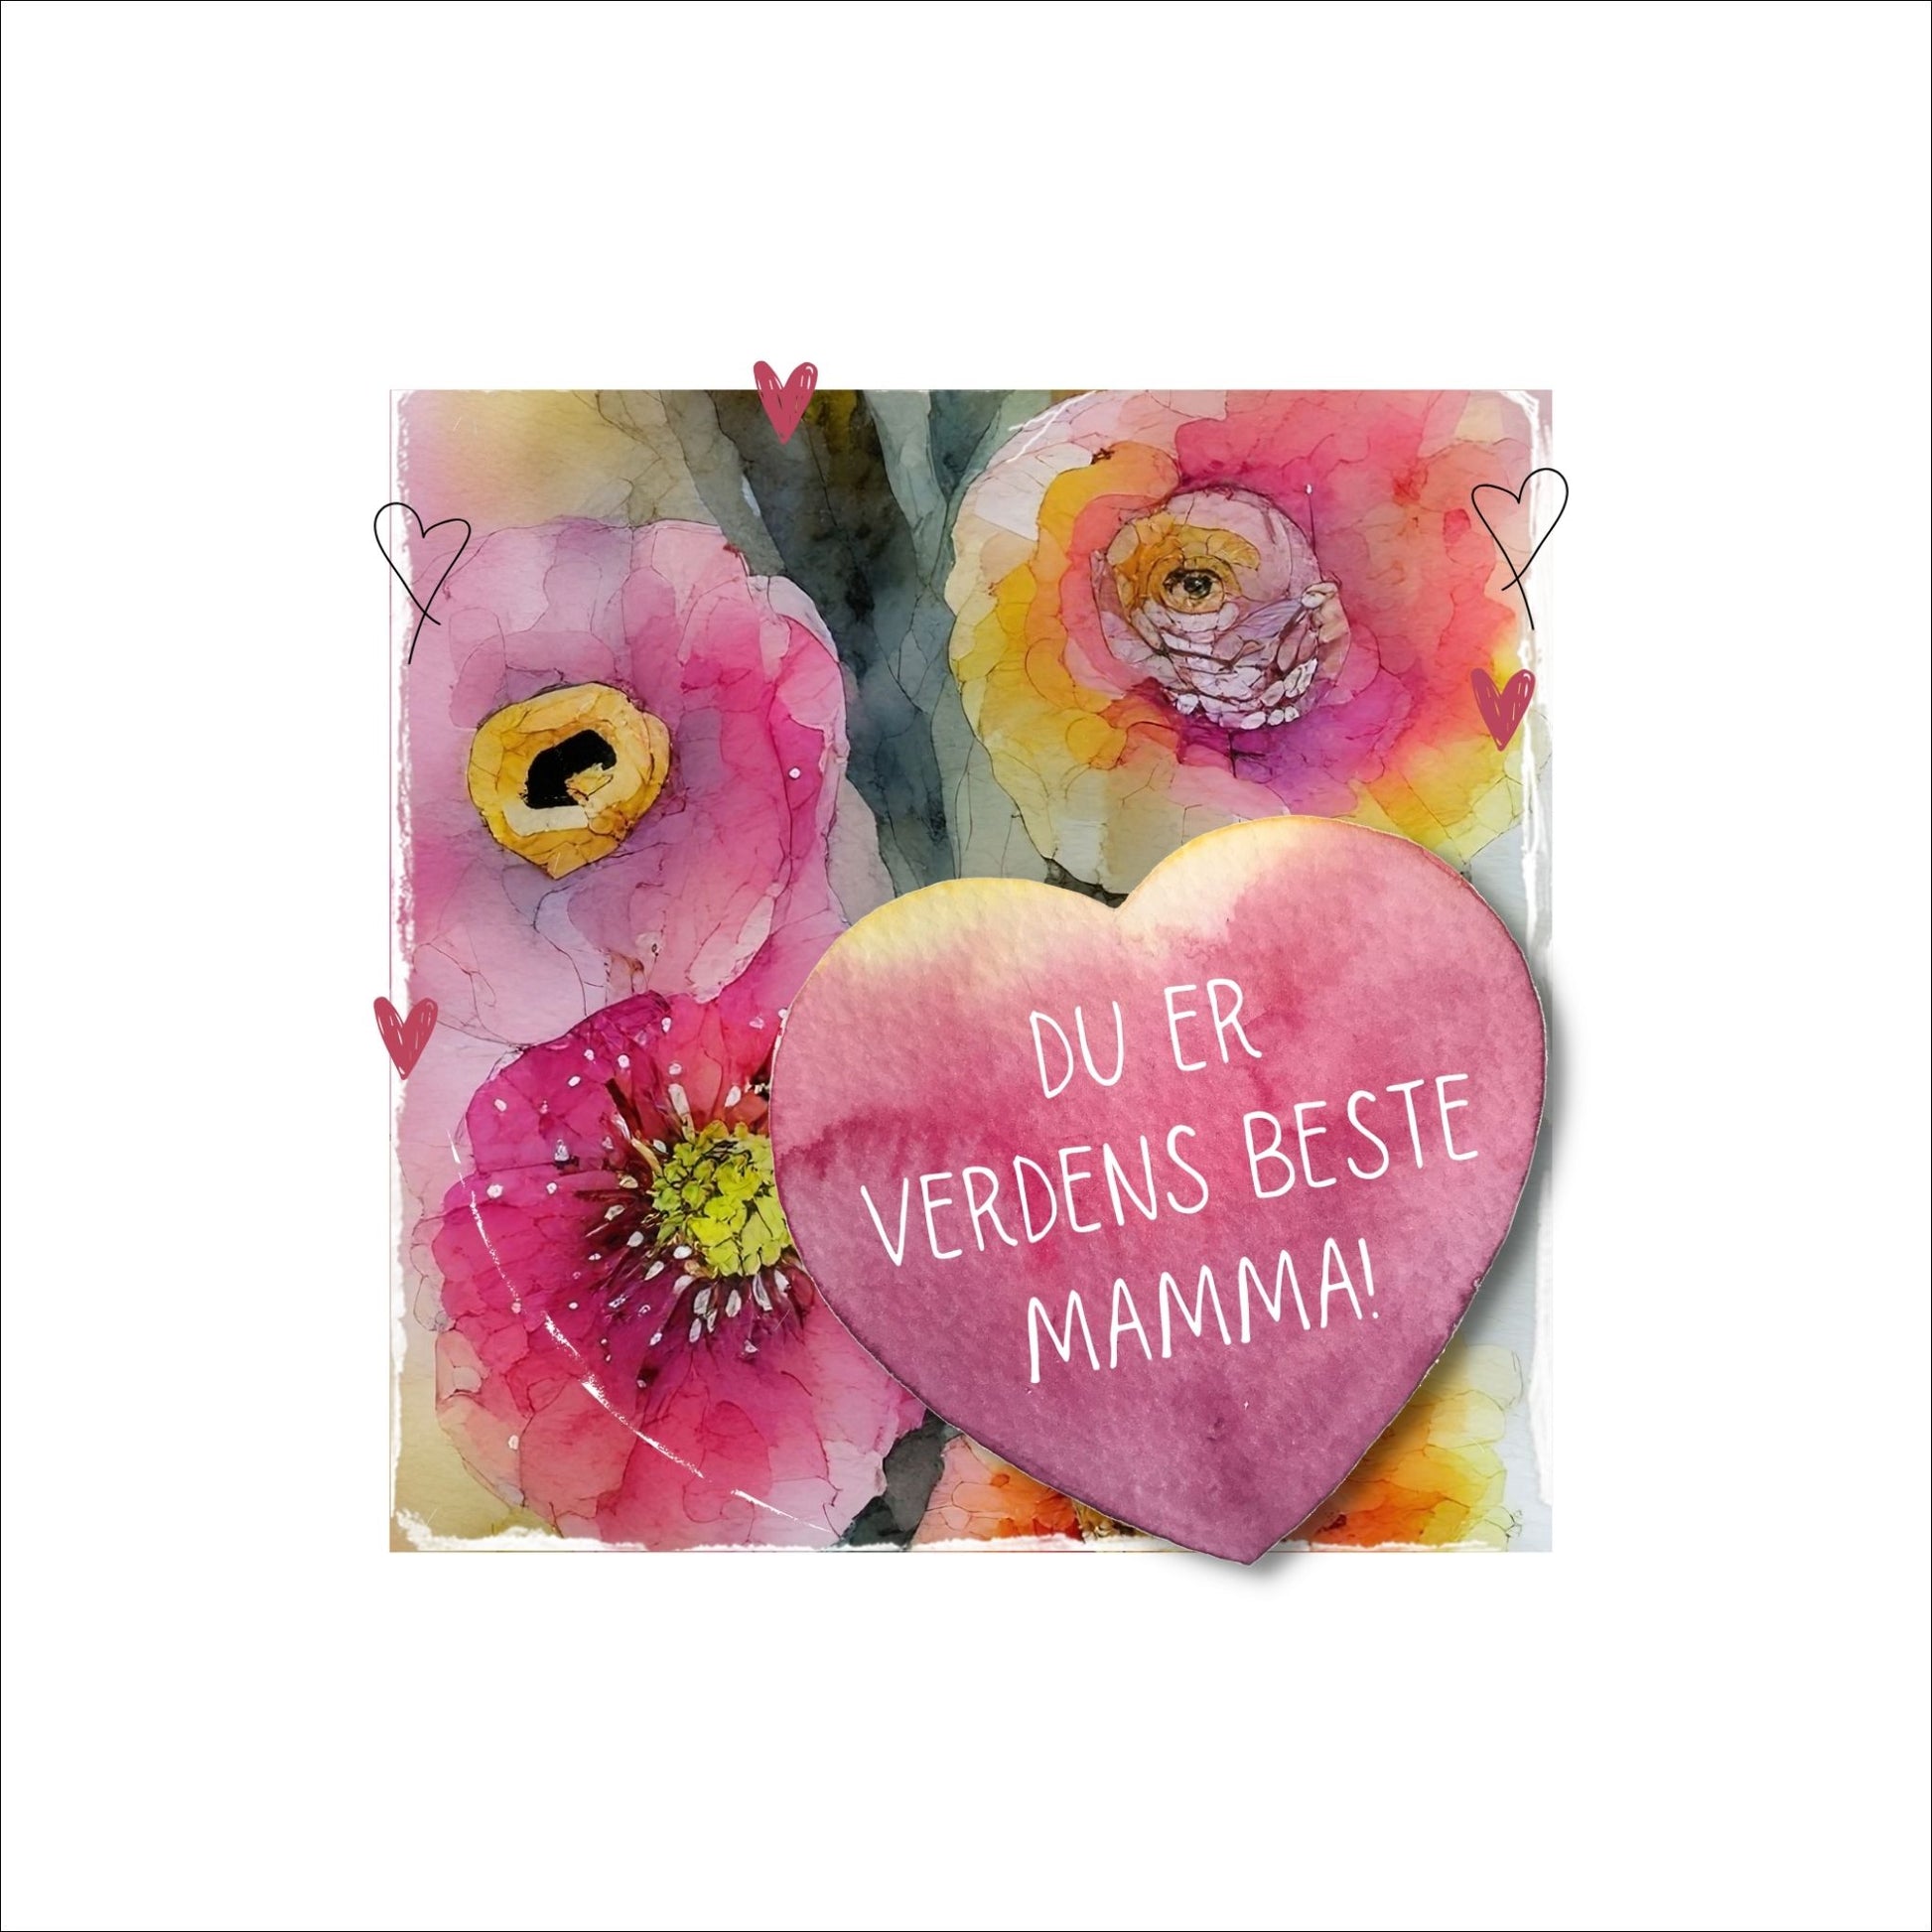 Grafisk plakat med et rosa hjerte påført tekst "Du er verdens beste mamma". Bagrunn i cerise og guloransje blomster. Kortet har en hvit kant runt på 4 cm.